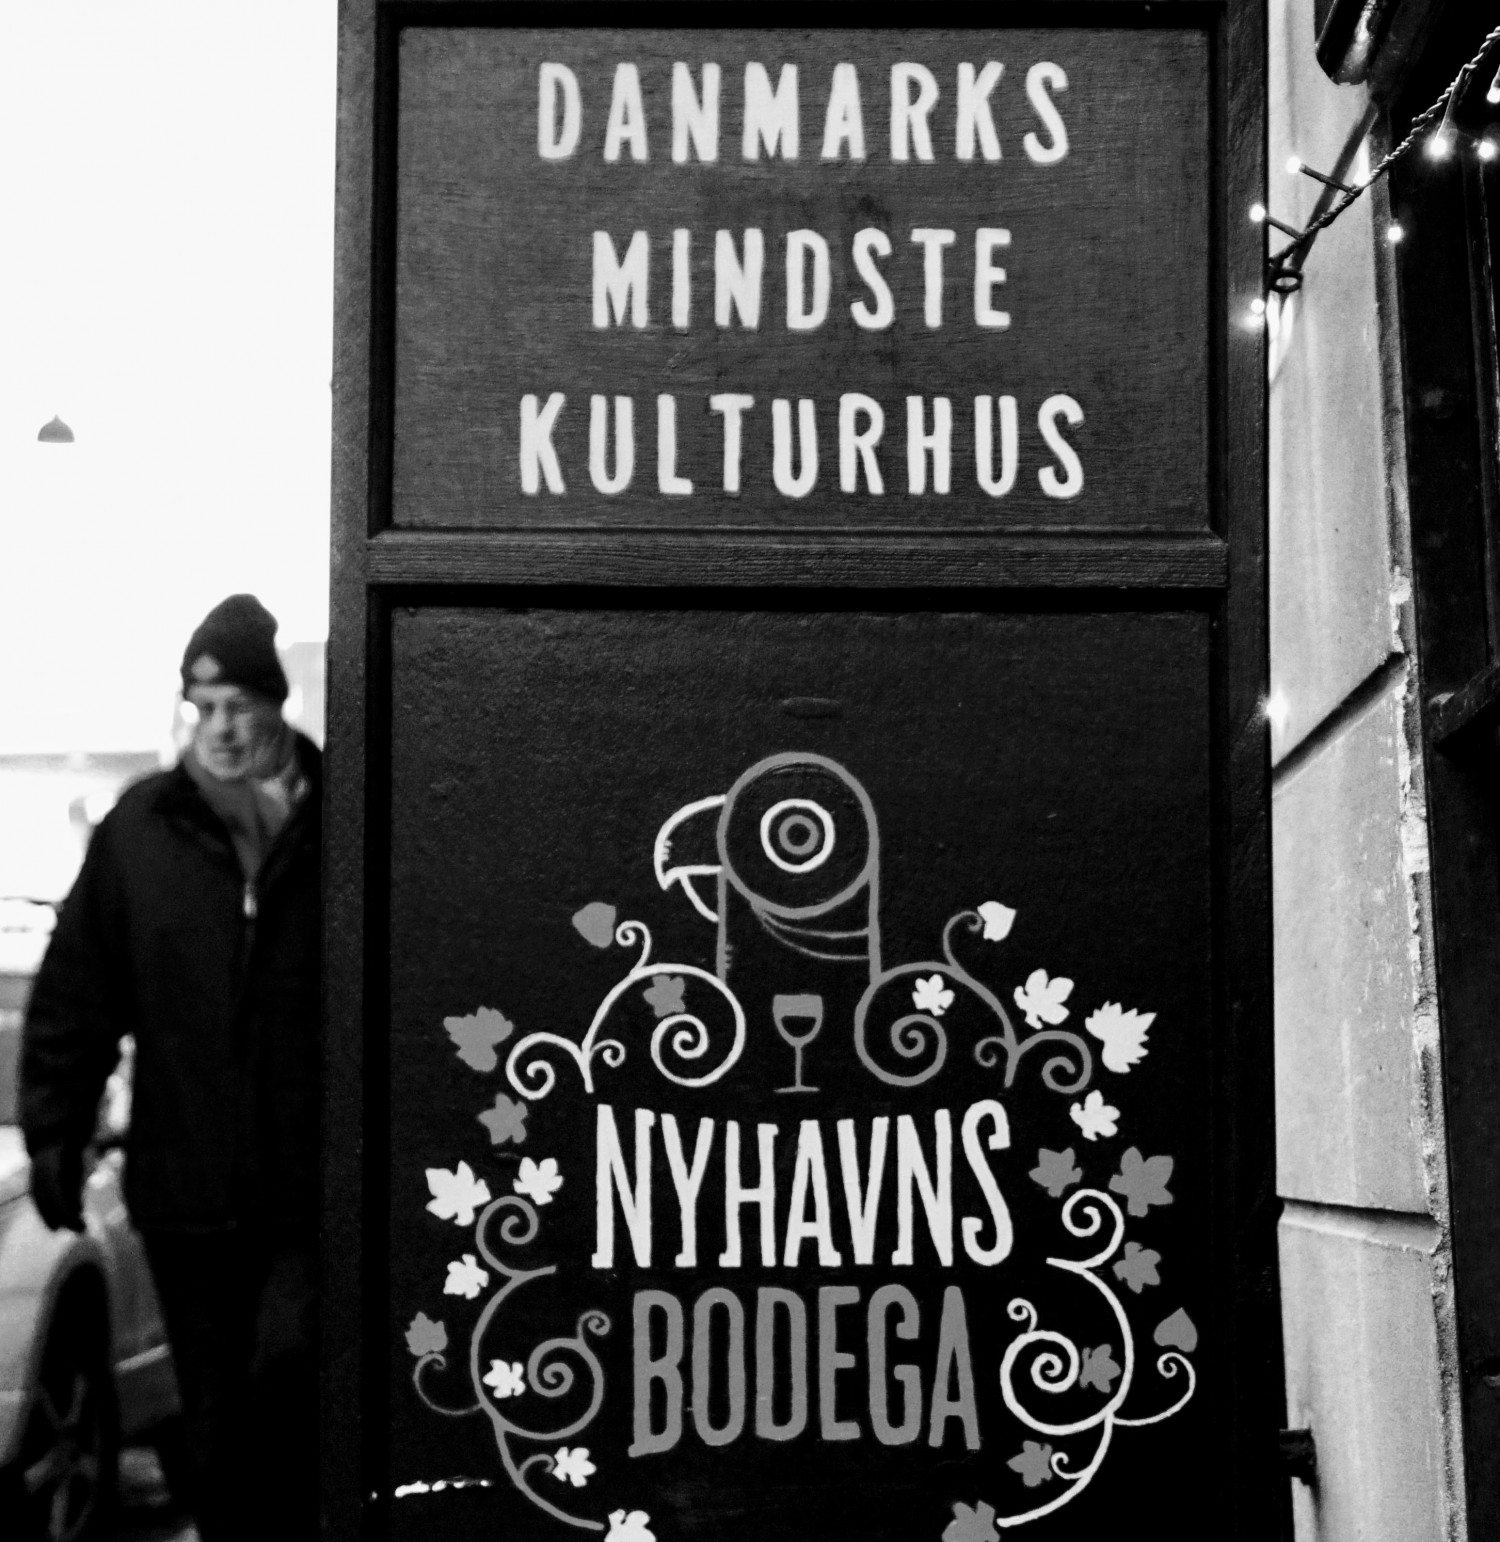 Utraditionel banko med champagne i Nyhavns Bodega | Anbefalinger | elintabitha